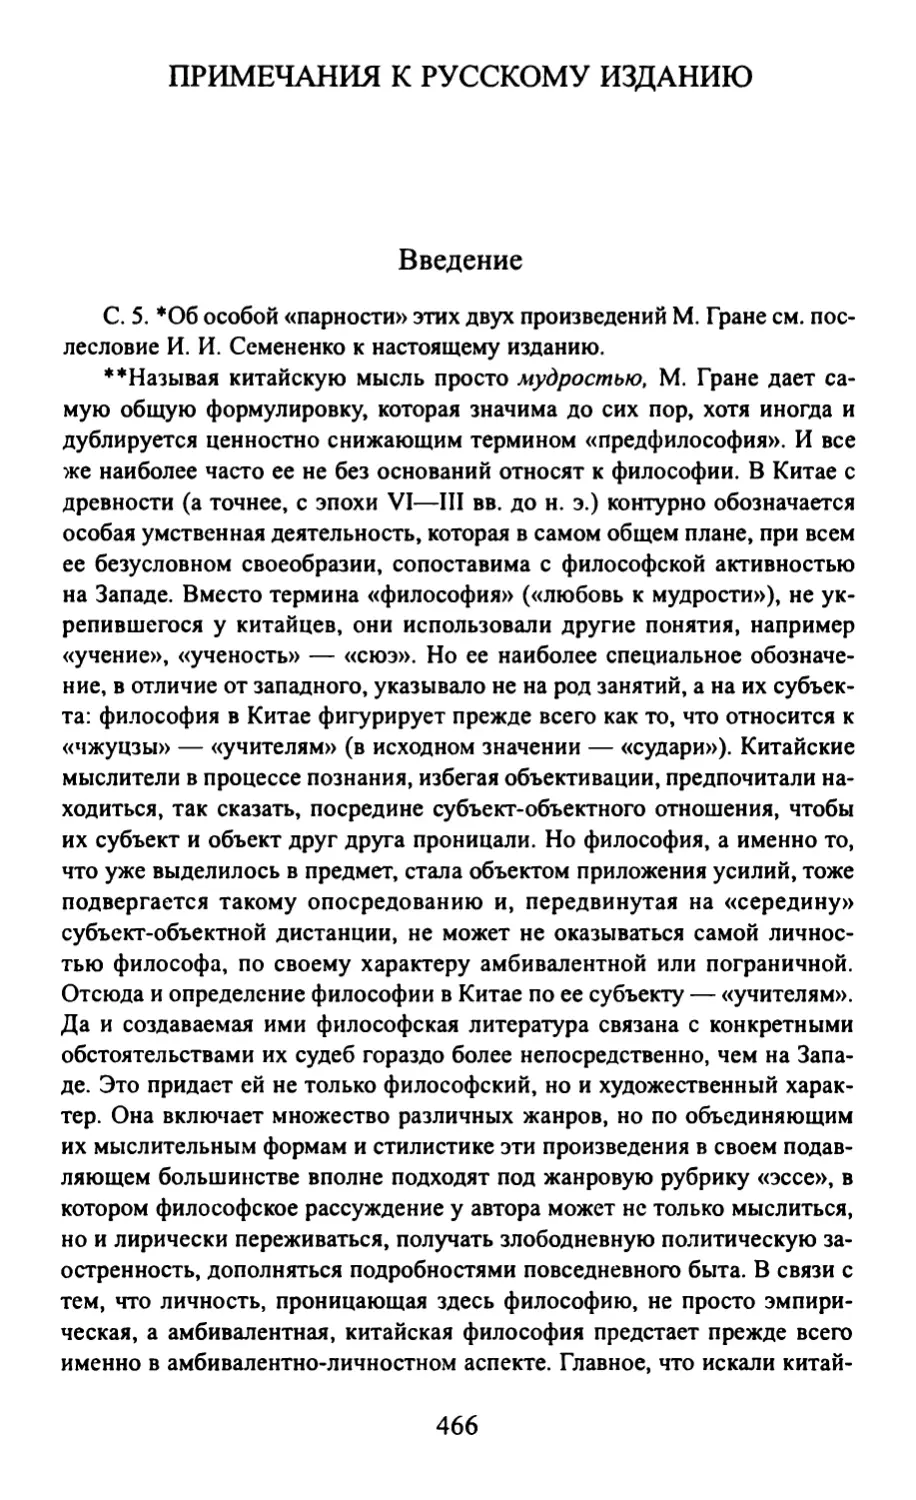 Примечания к русскому изданию. И. И. Семененко